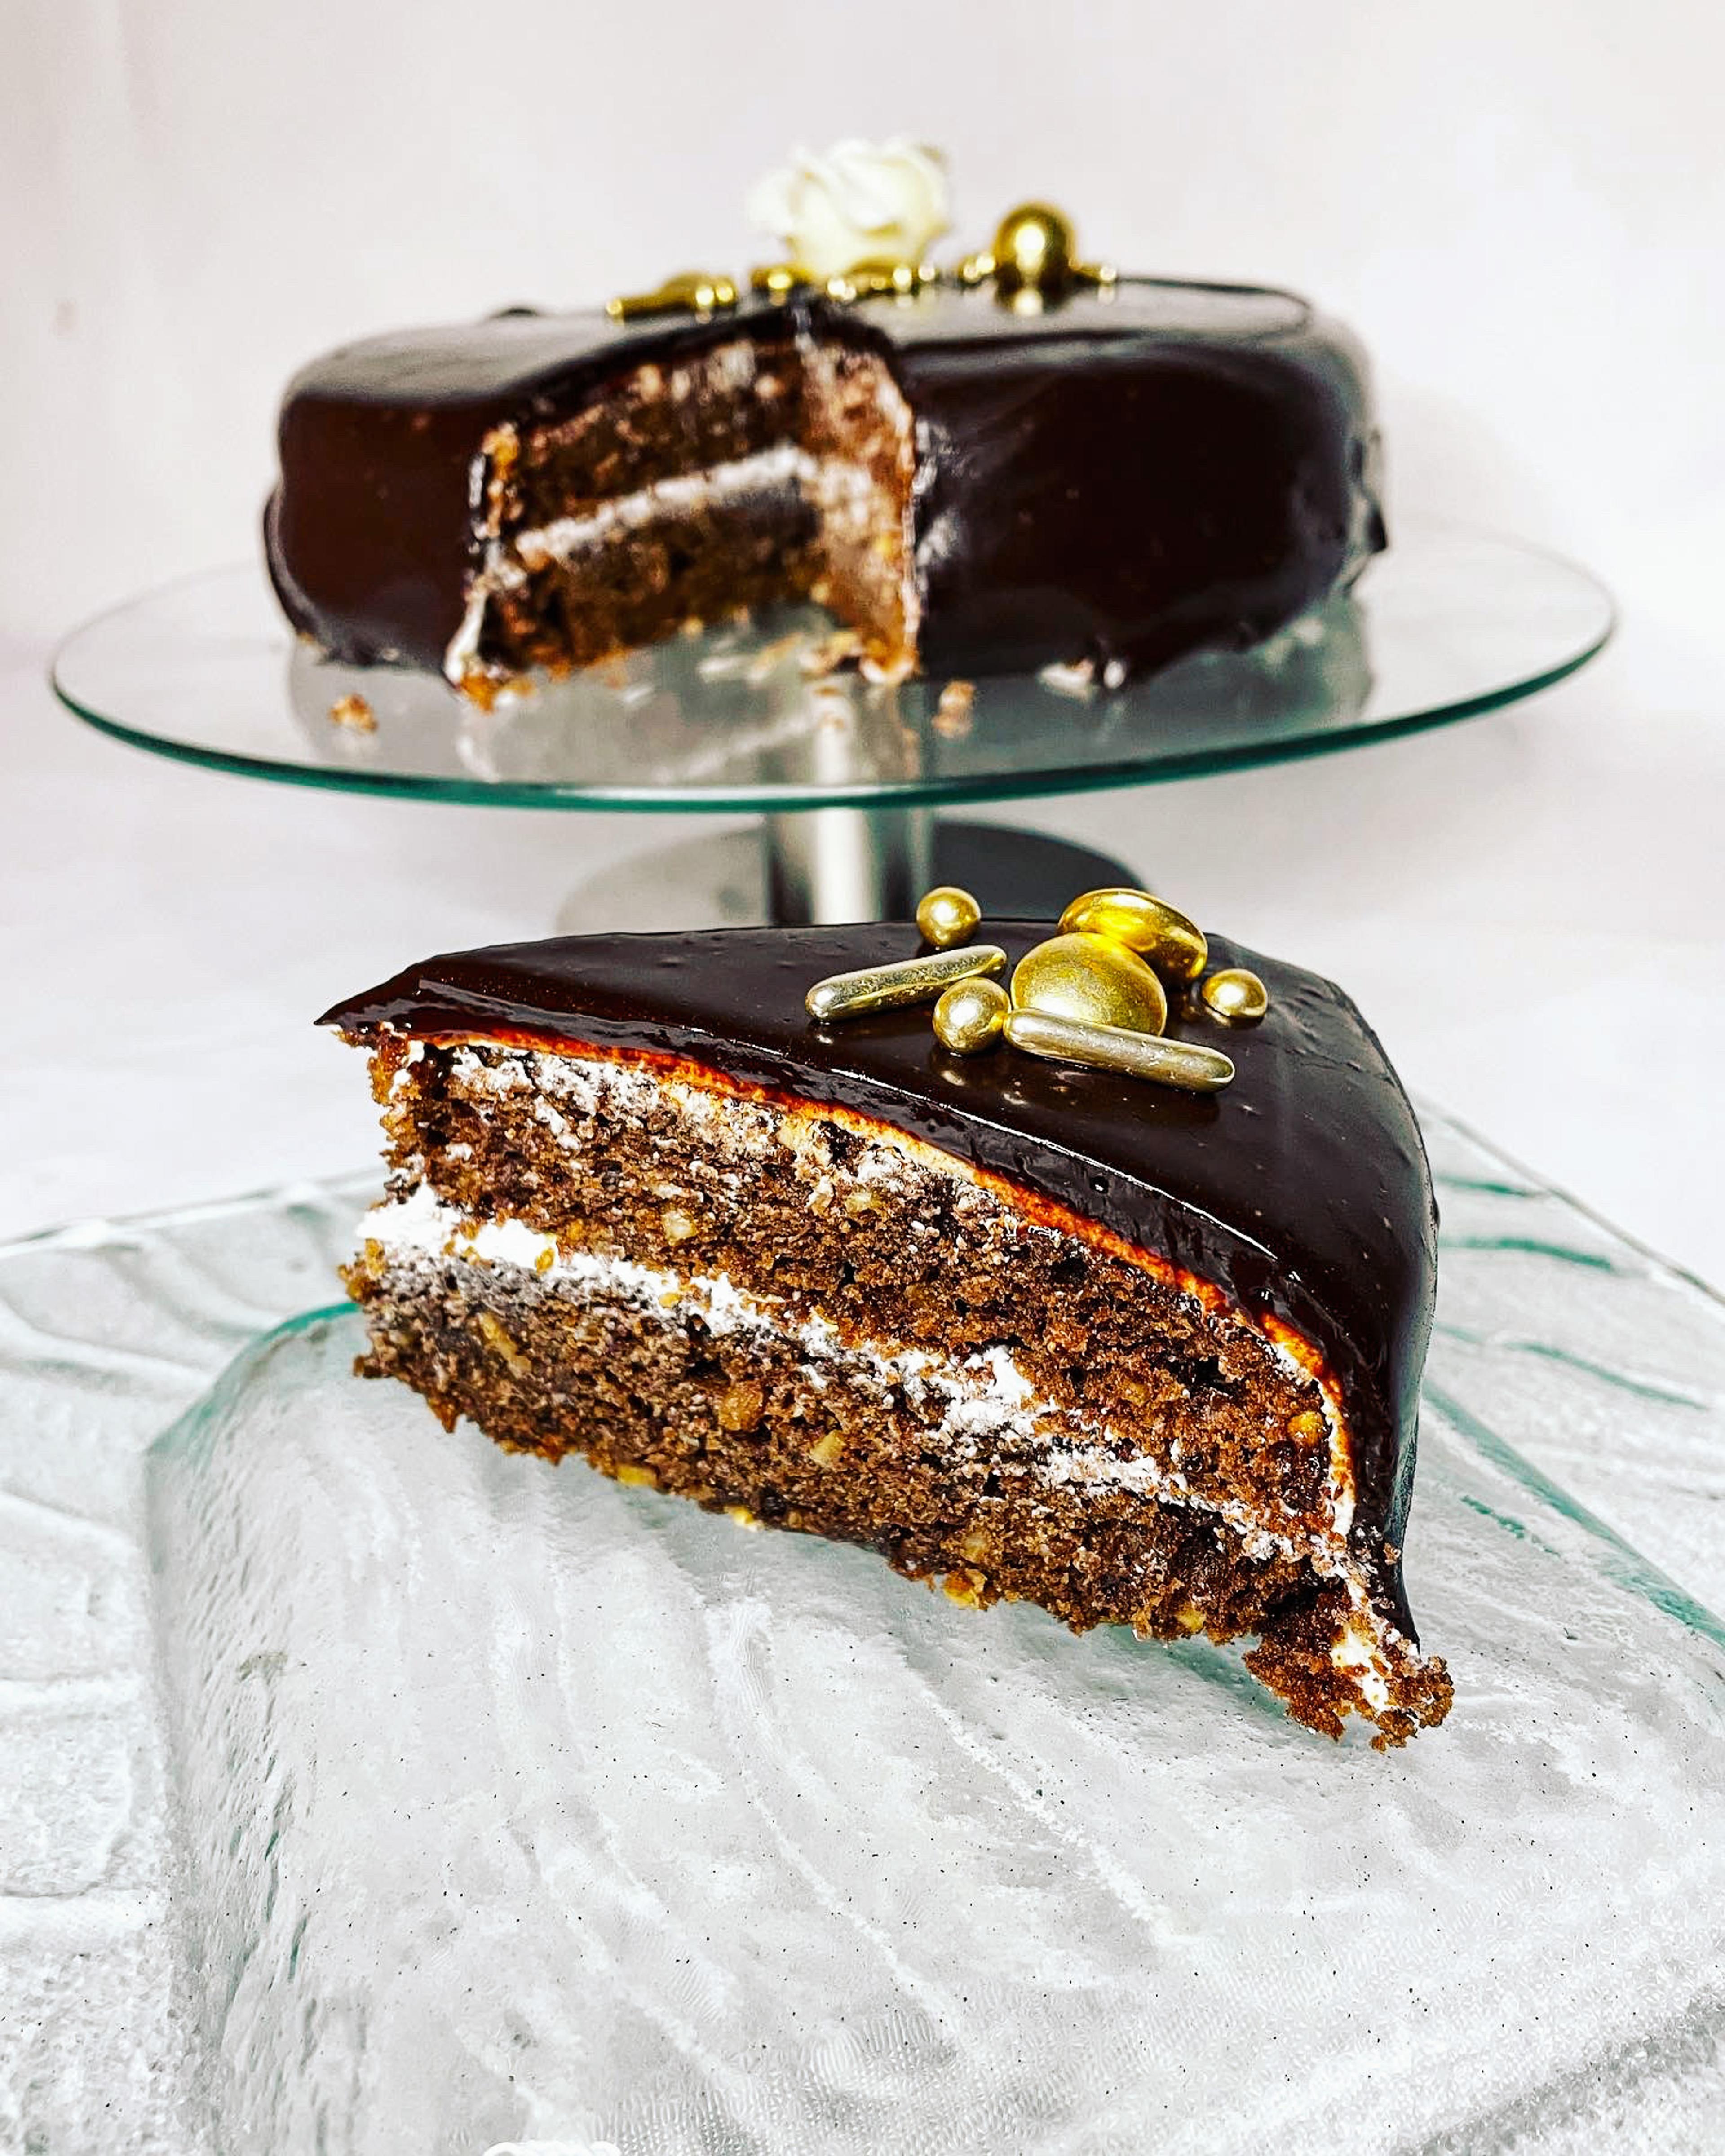 La deg friste av nydelige kaker og desserter fra Kokkejævel. Foto: Isabelle Kristiansen Sandøy